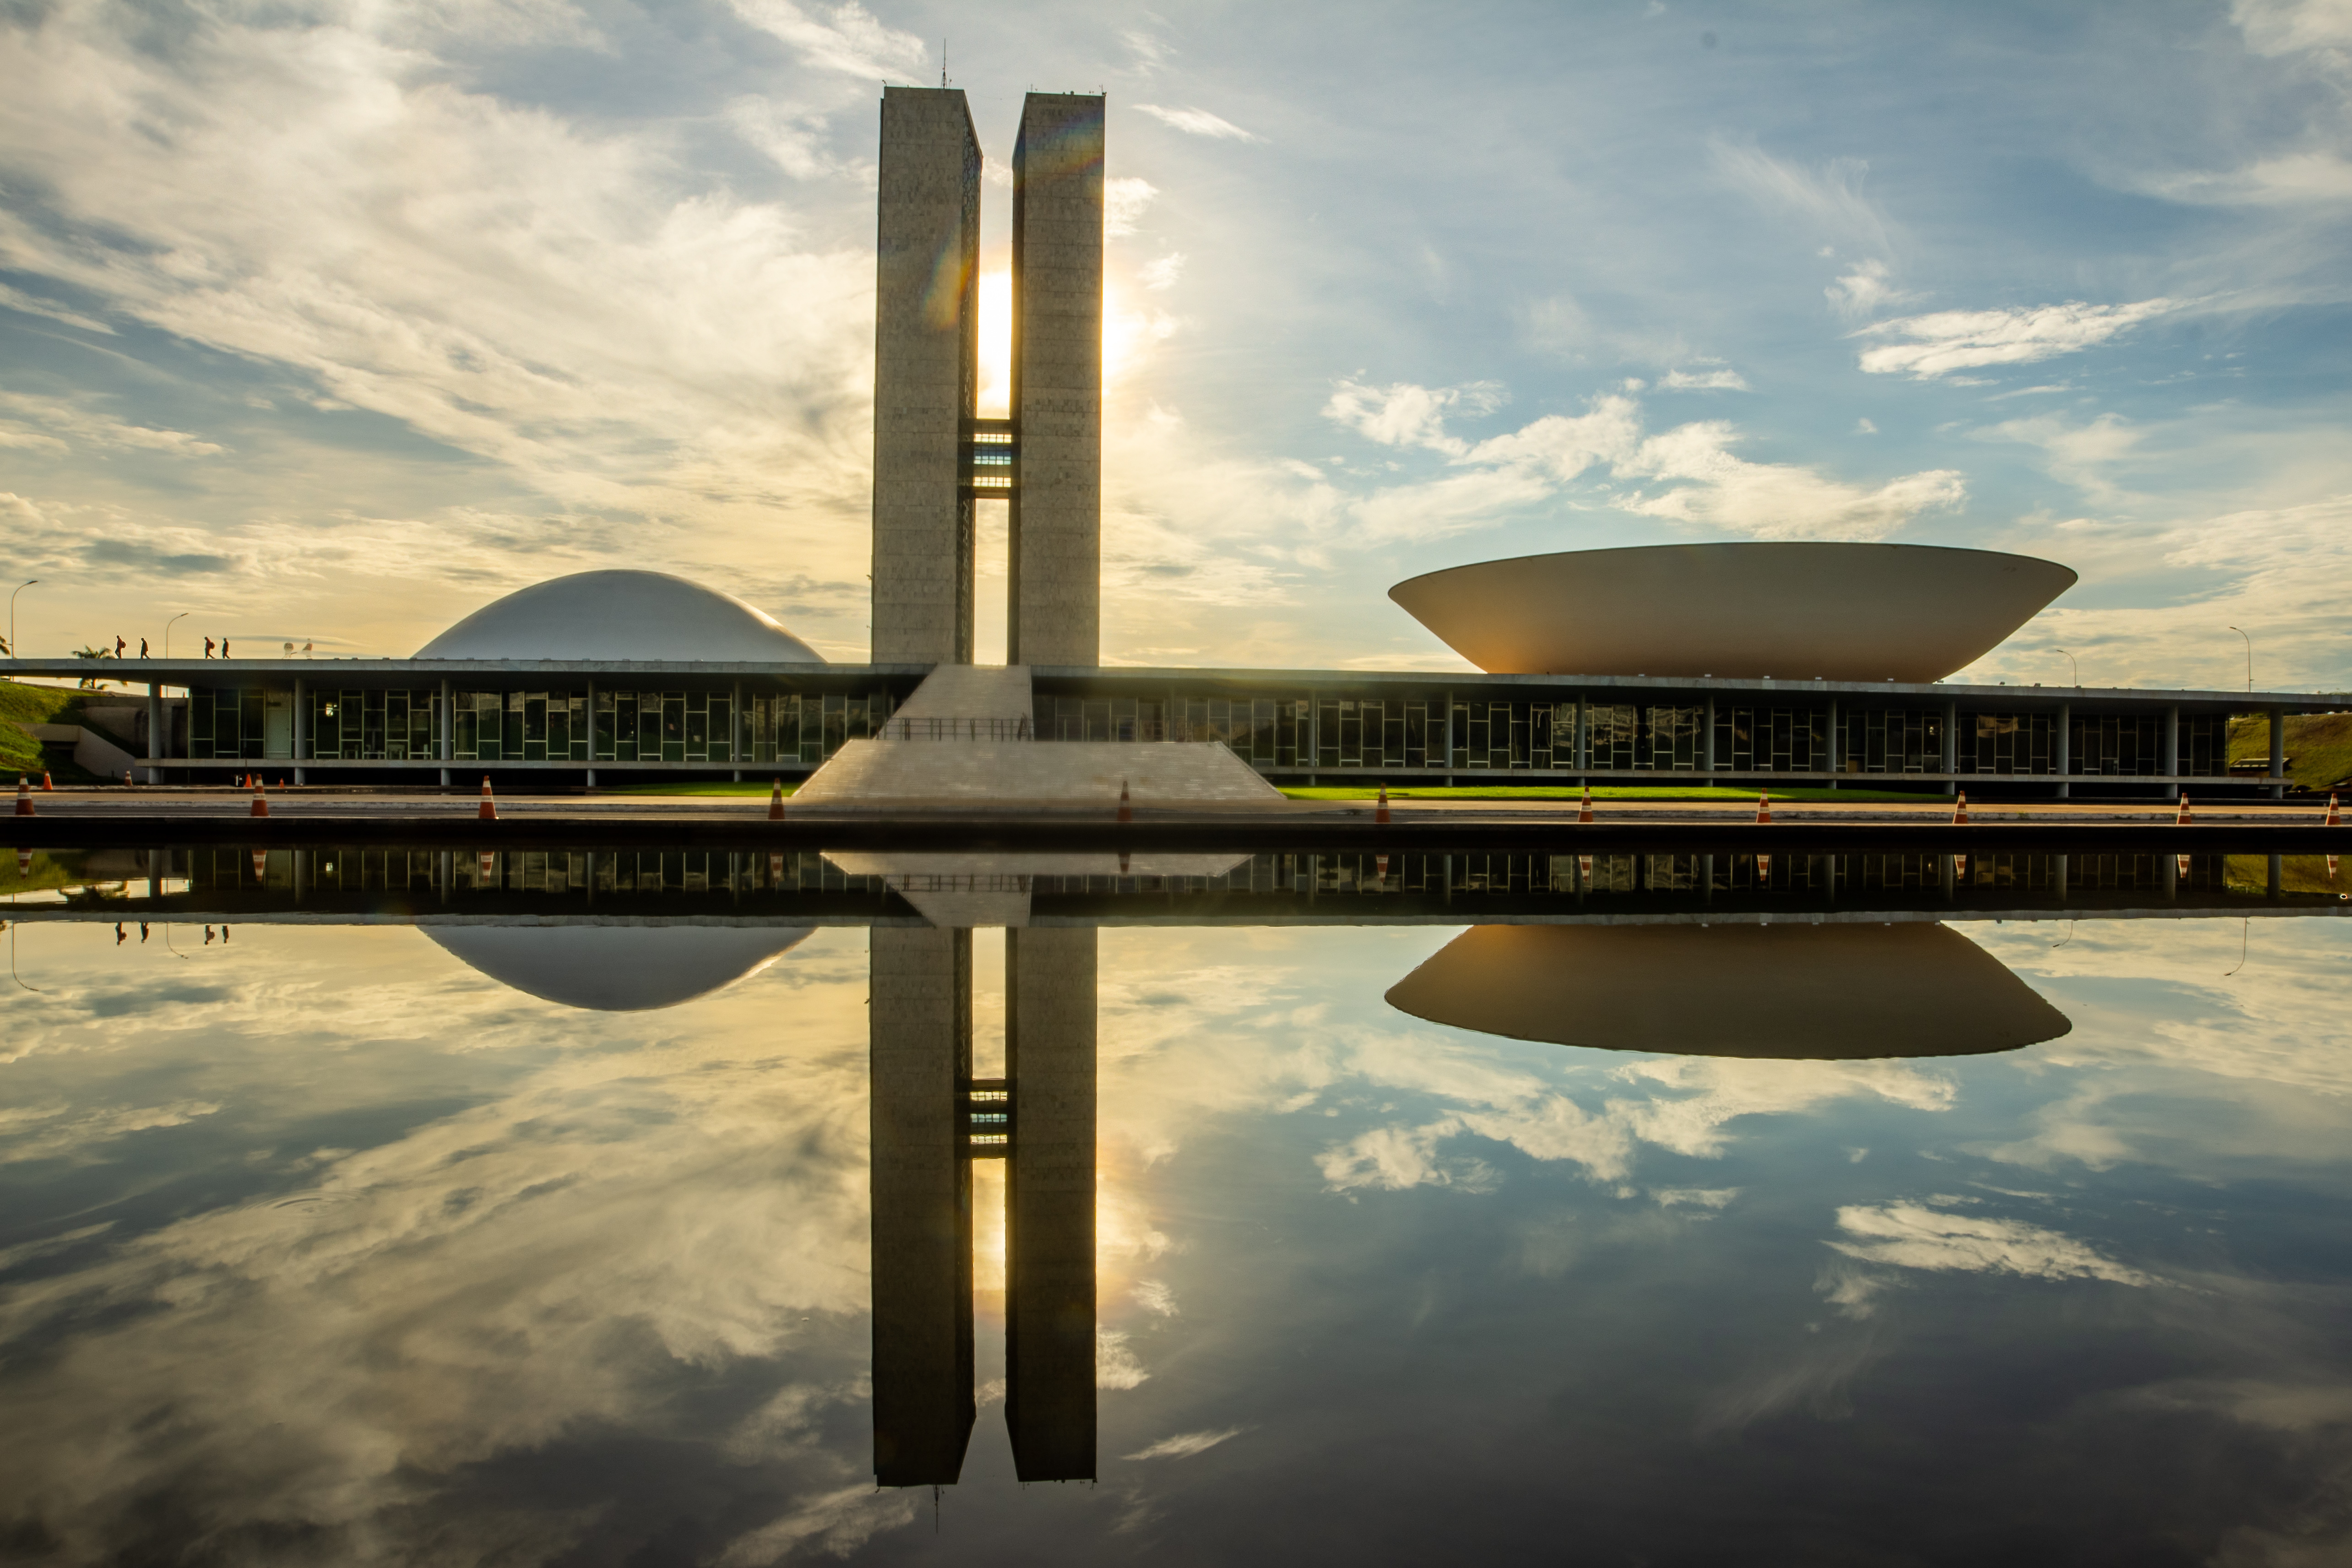 Brasilia - stolica Brazylii. Historia, architekt, projekt miasta - Podróże